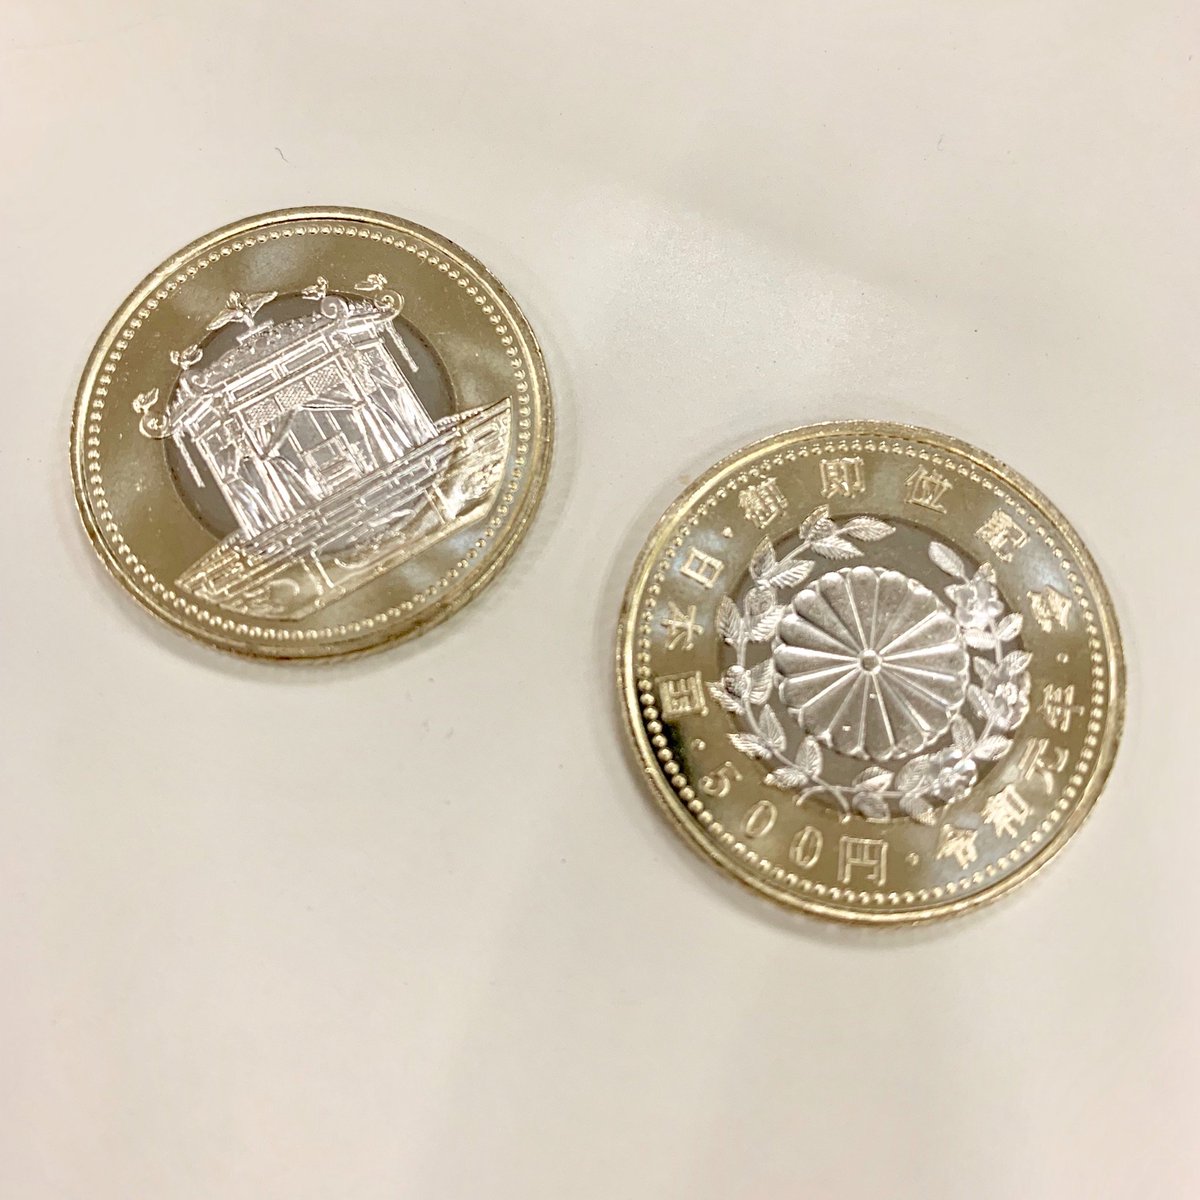 10月18日より発行された天皇陛下御即位記念500円硬貨、めっちゃ ...